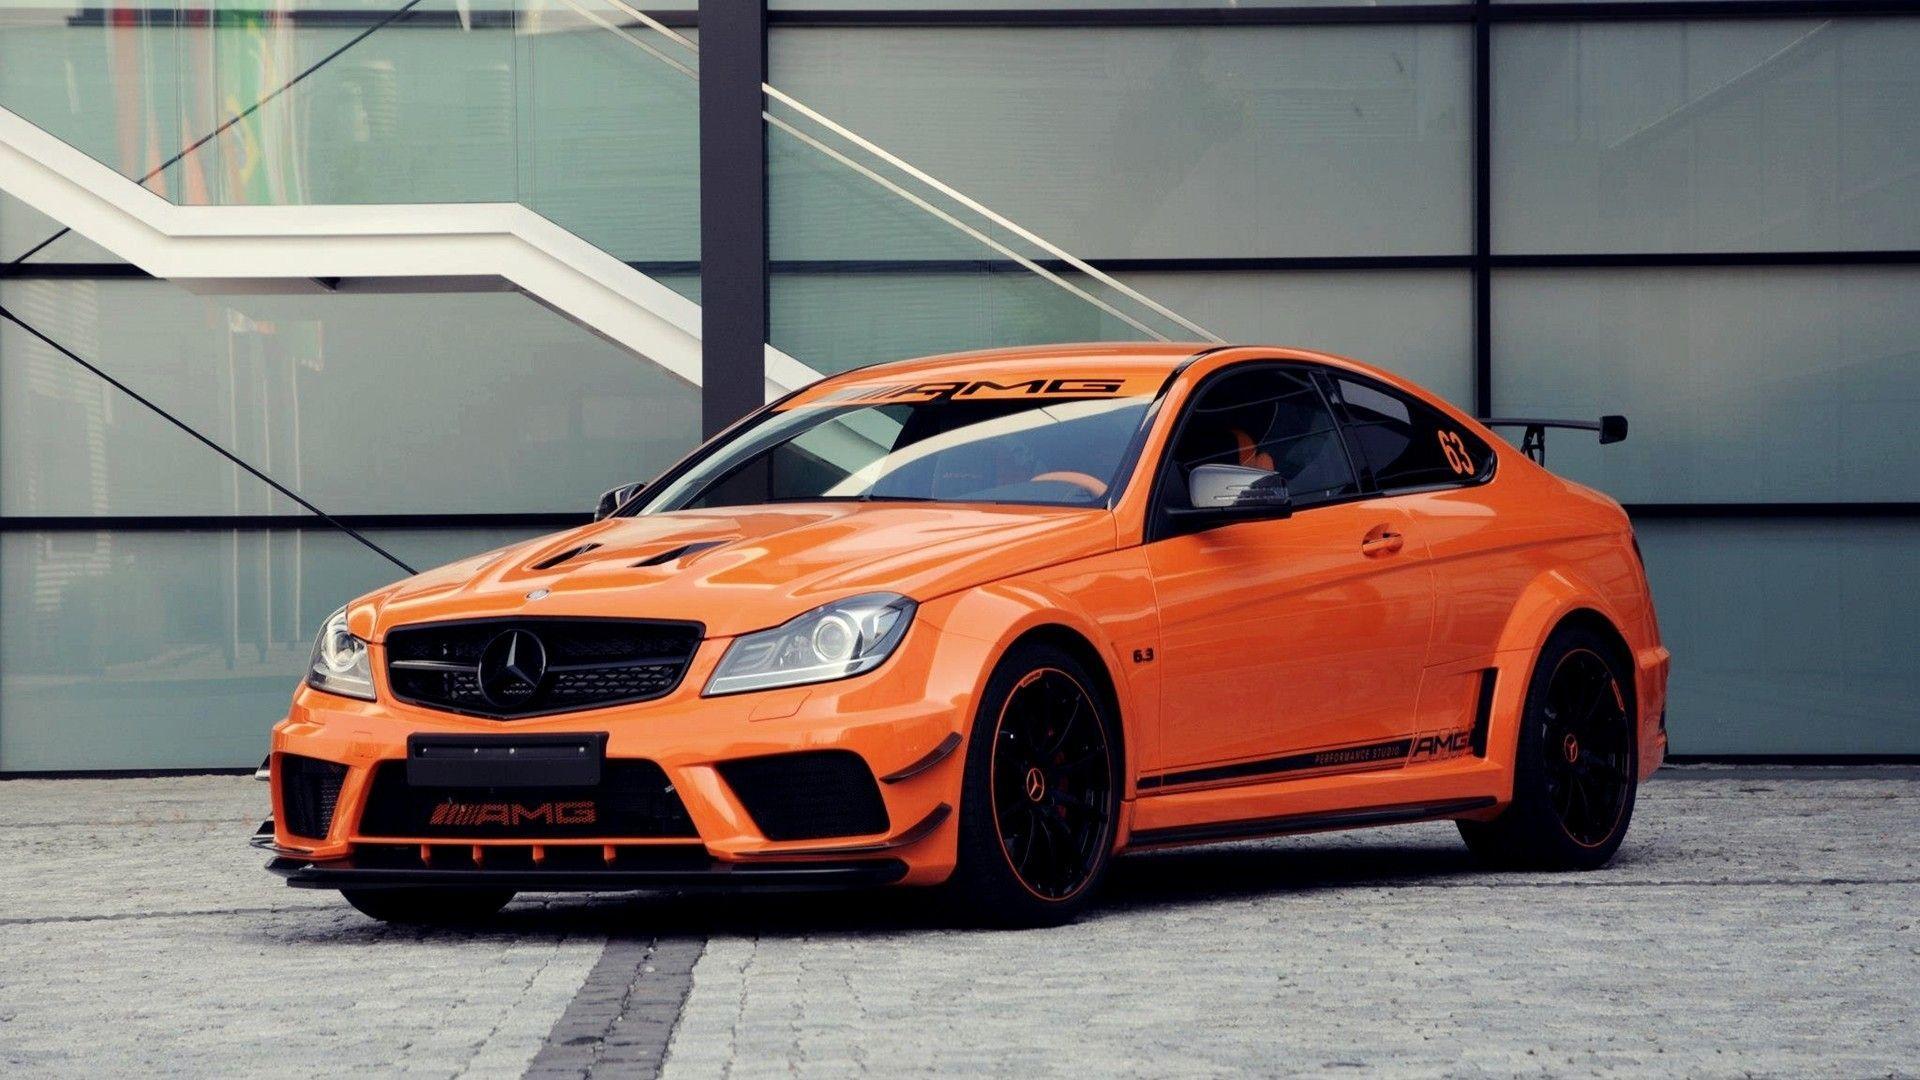 C63 AMG, Mercedes Benz, Orange, Car Wallpaper HD / Desktop